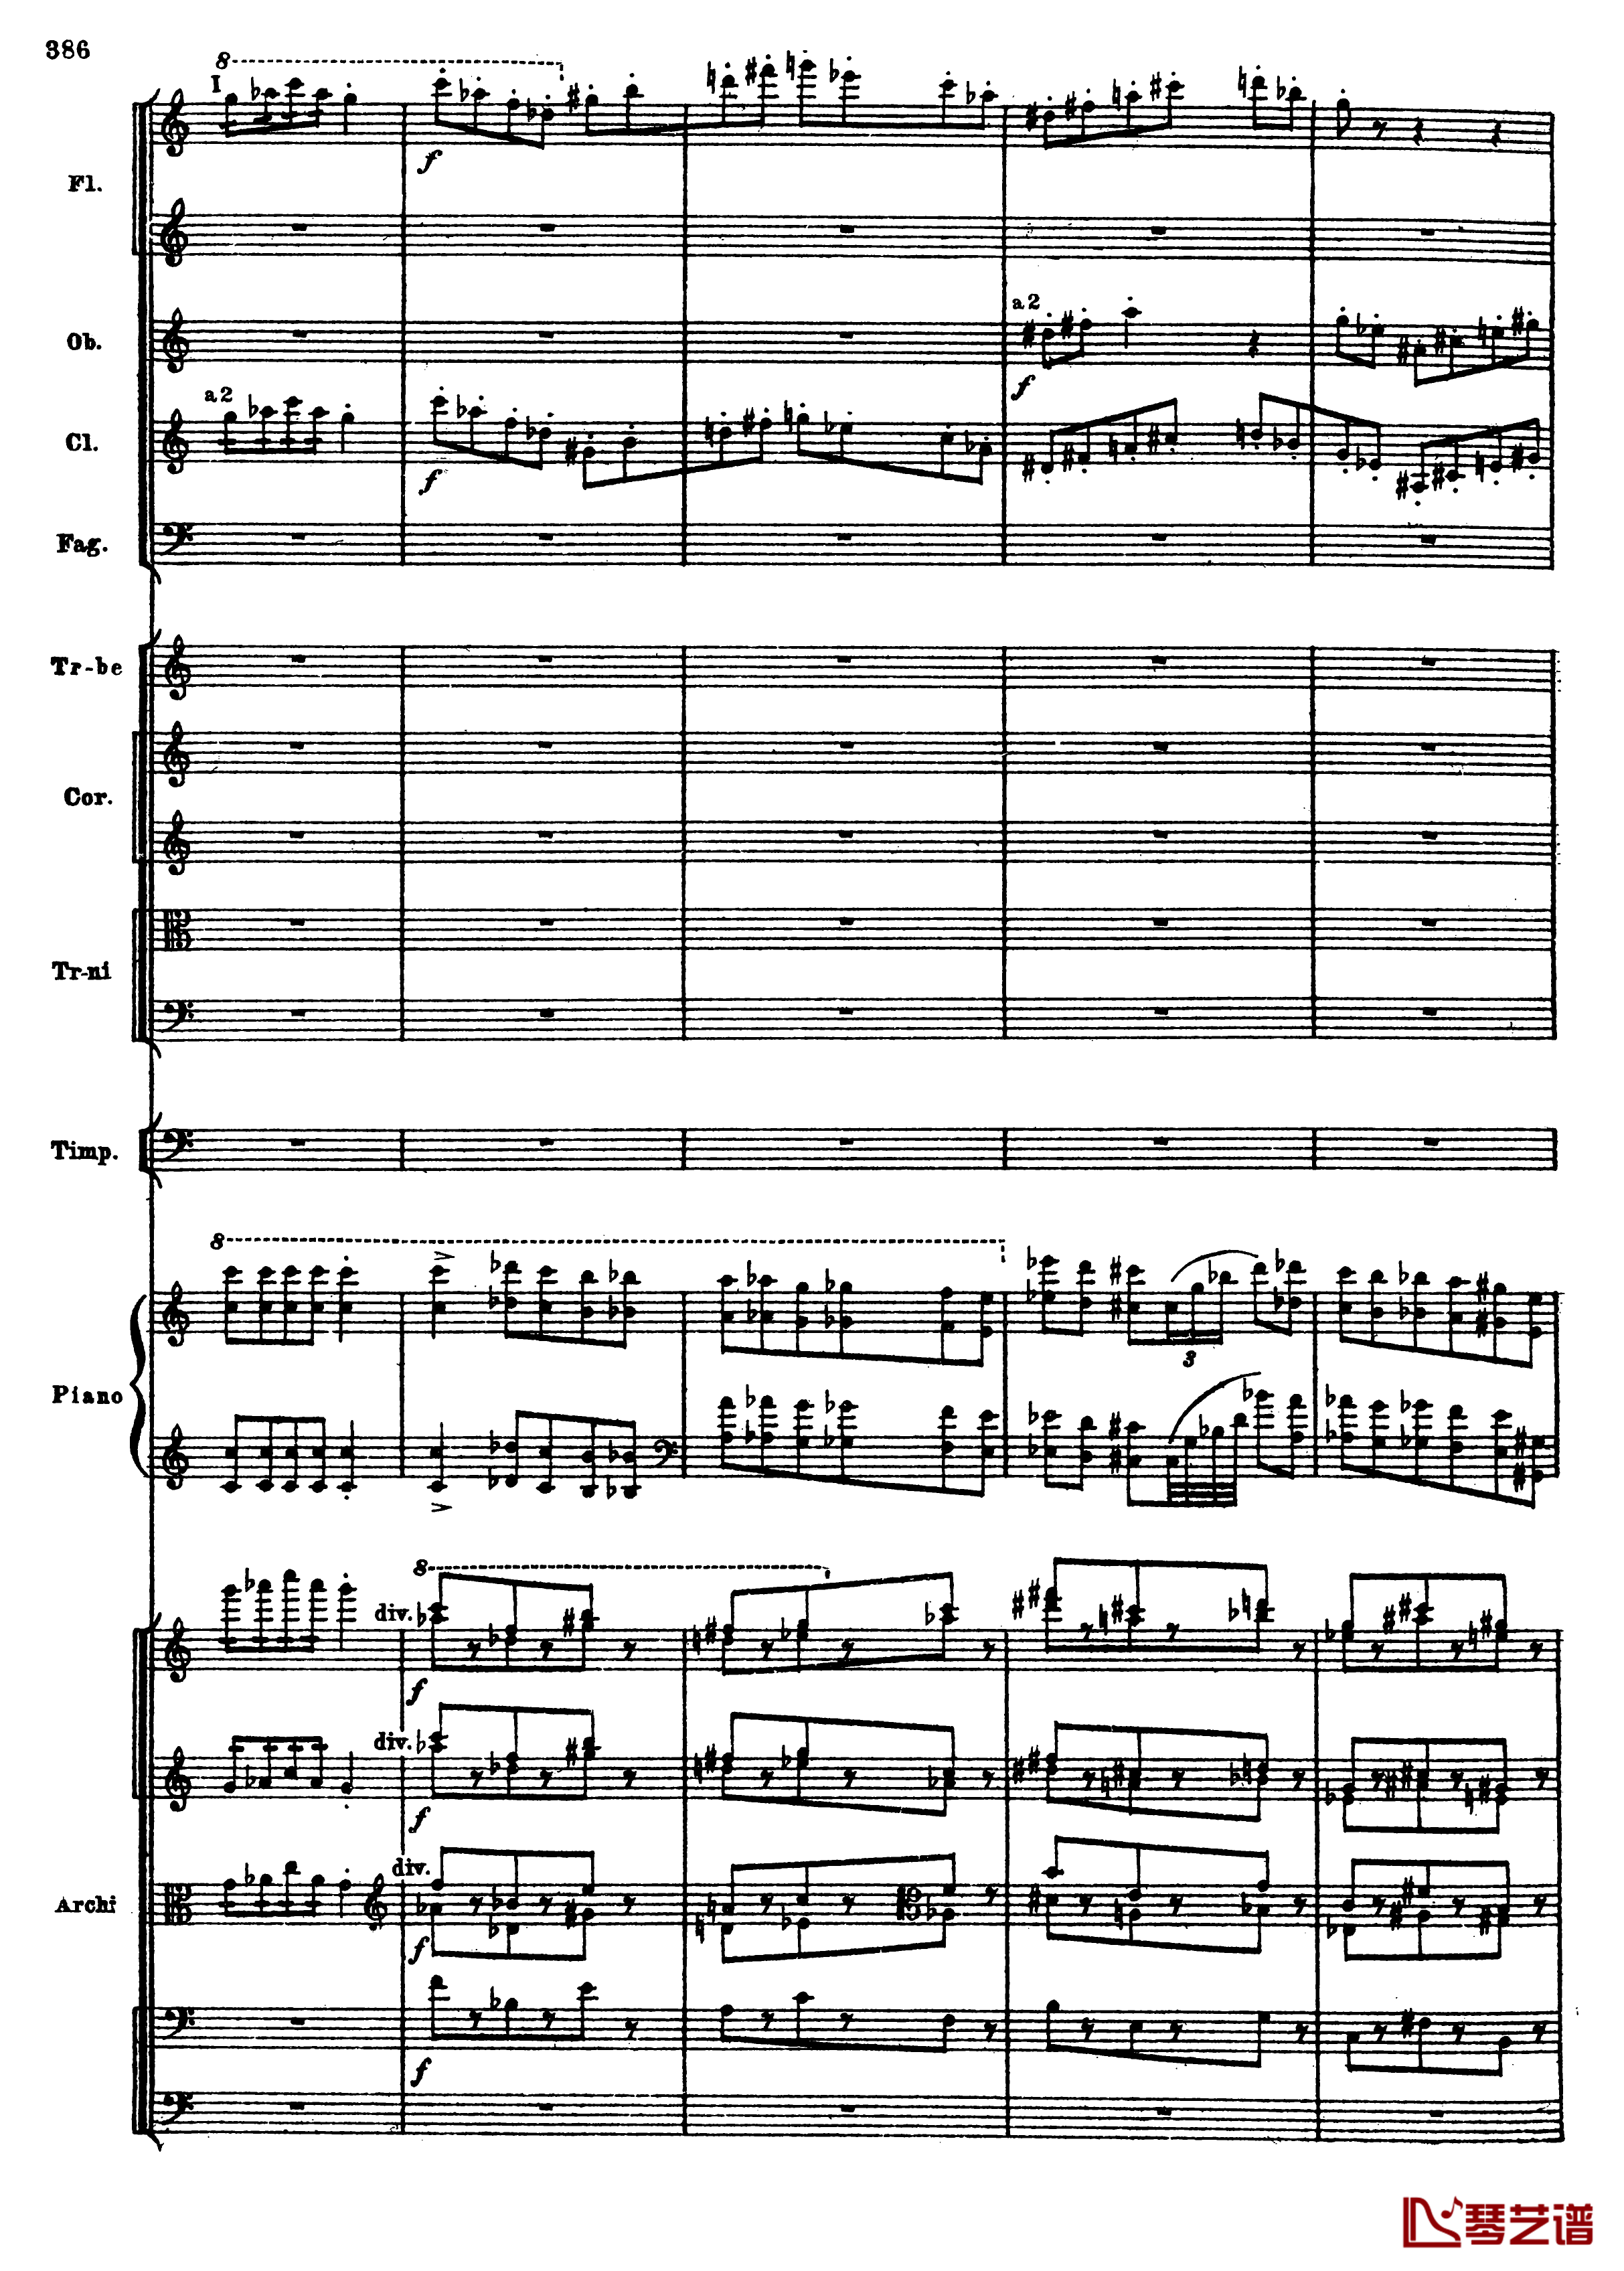 普罗科菲耶夫第三钢琴协奏曲钢琴谱-总谱-普罗科非耶夫118